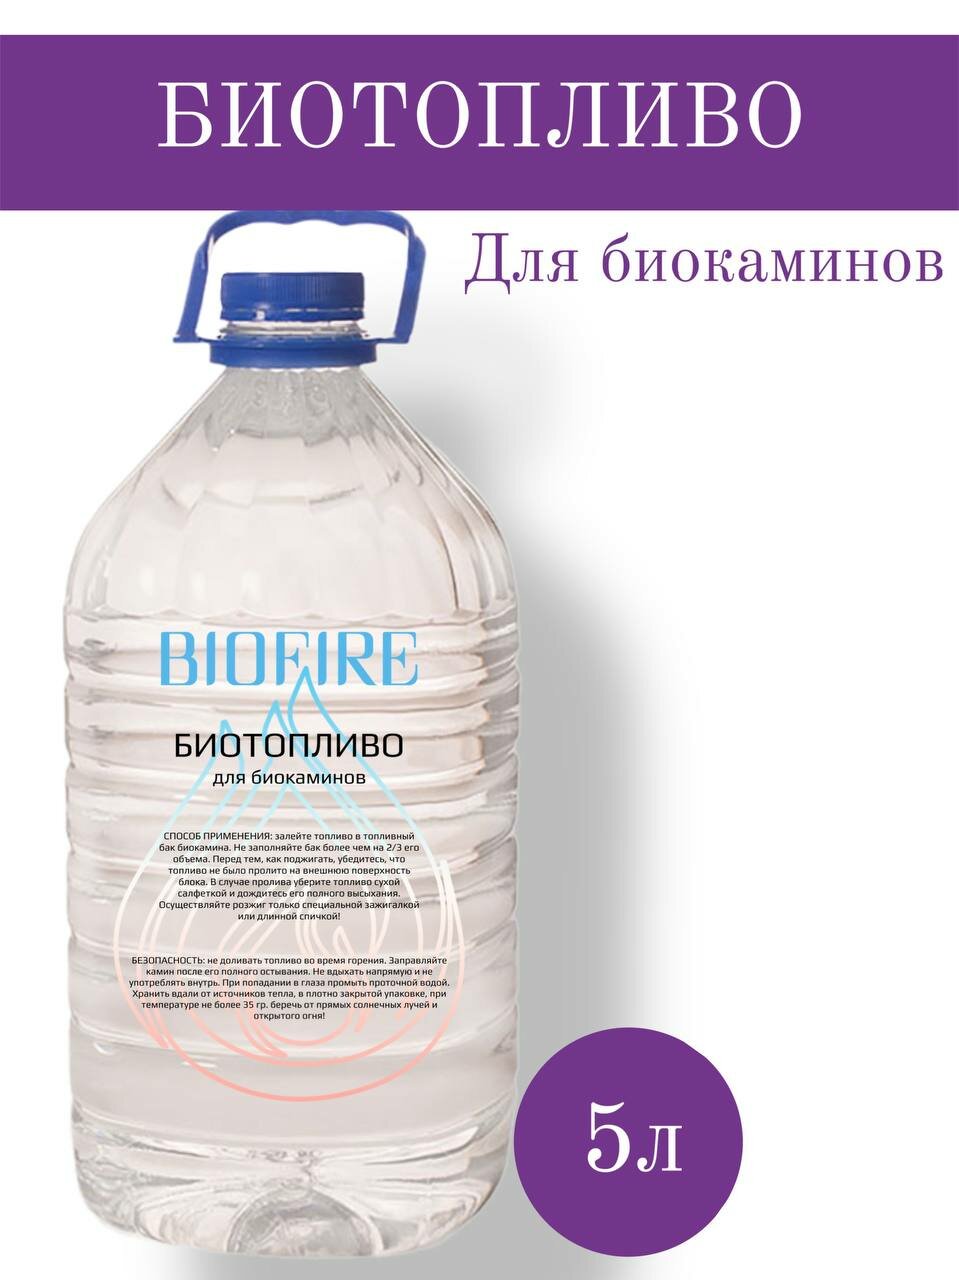 Биотопливо BoiFire для биокамина 5 л